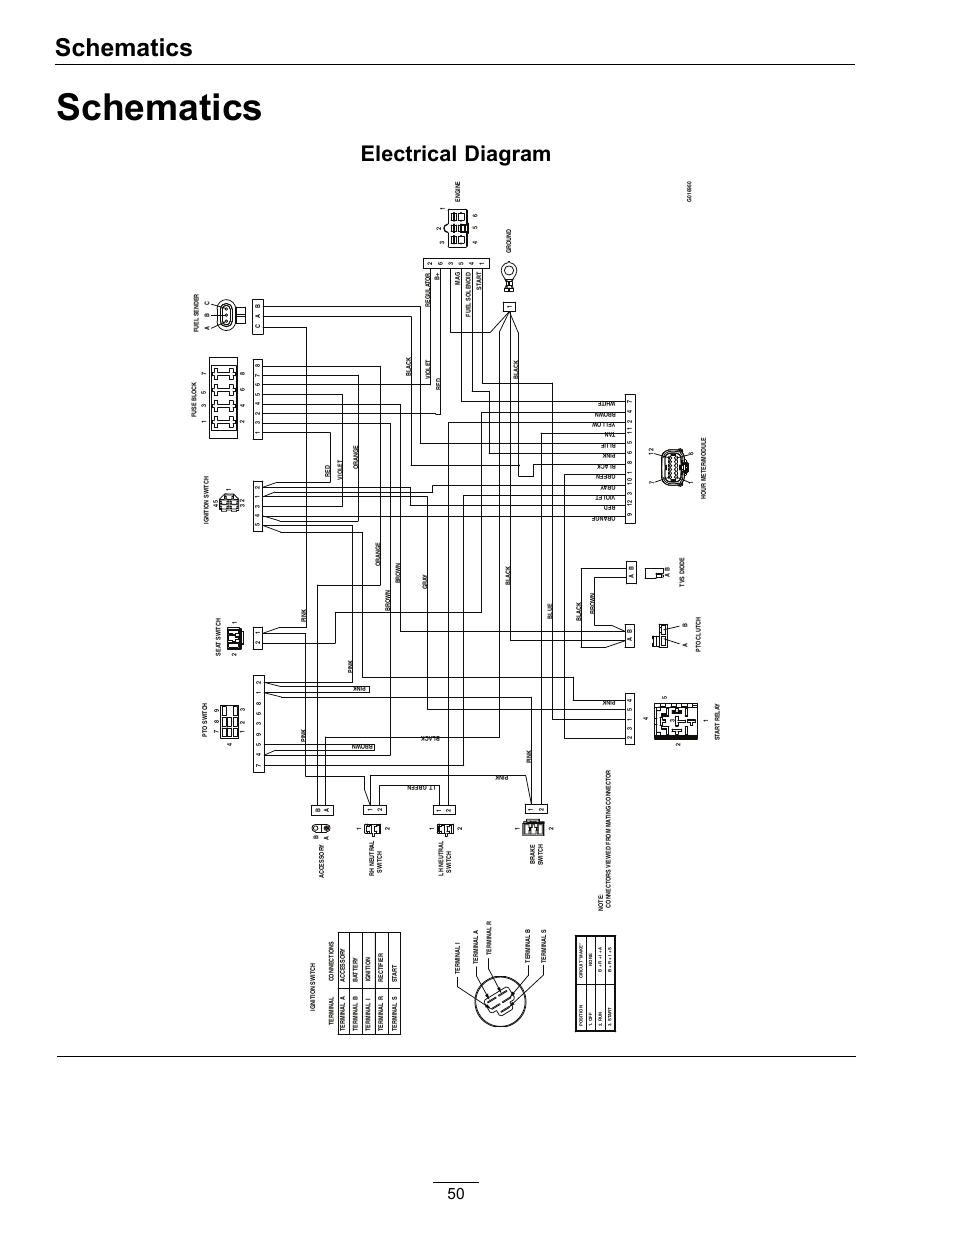 taos trailer wiring diagram